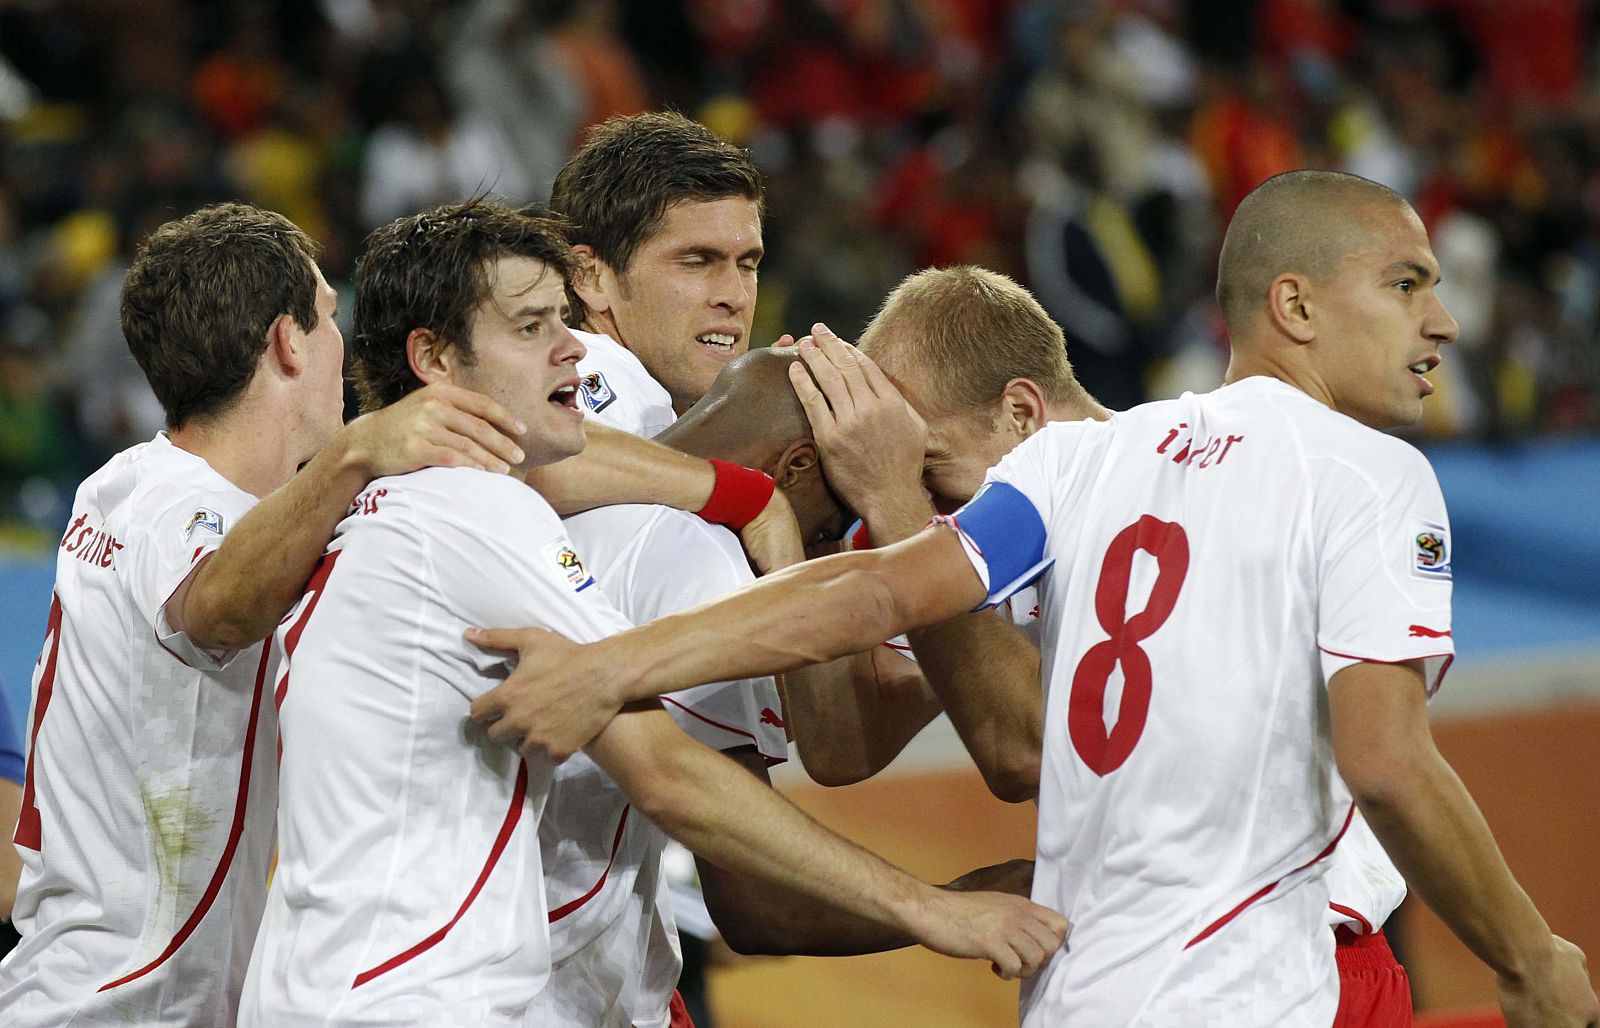 Los jugadores de Suiza felicitan a su compañero Fernandes tras haber marcado el gol a España.